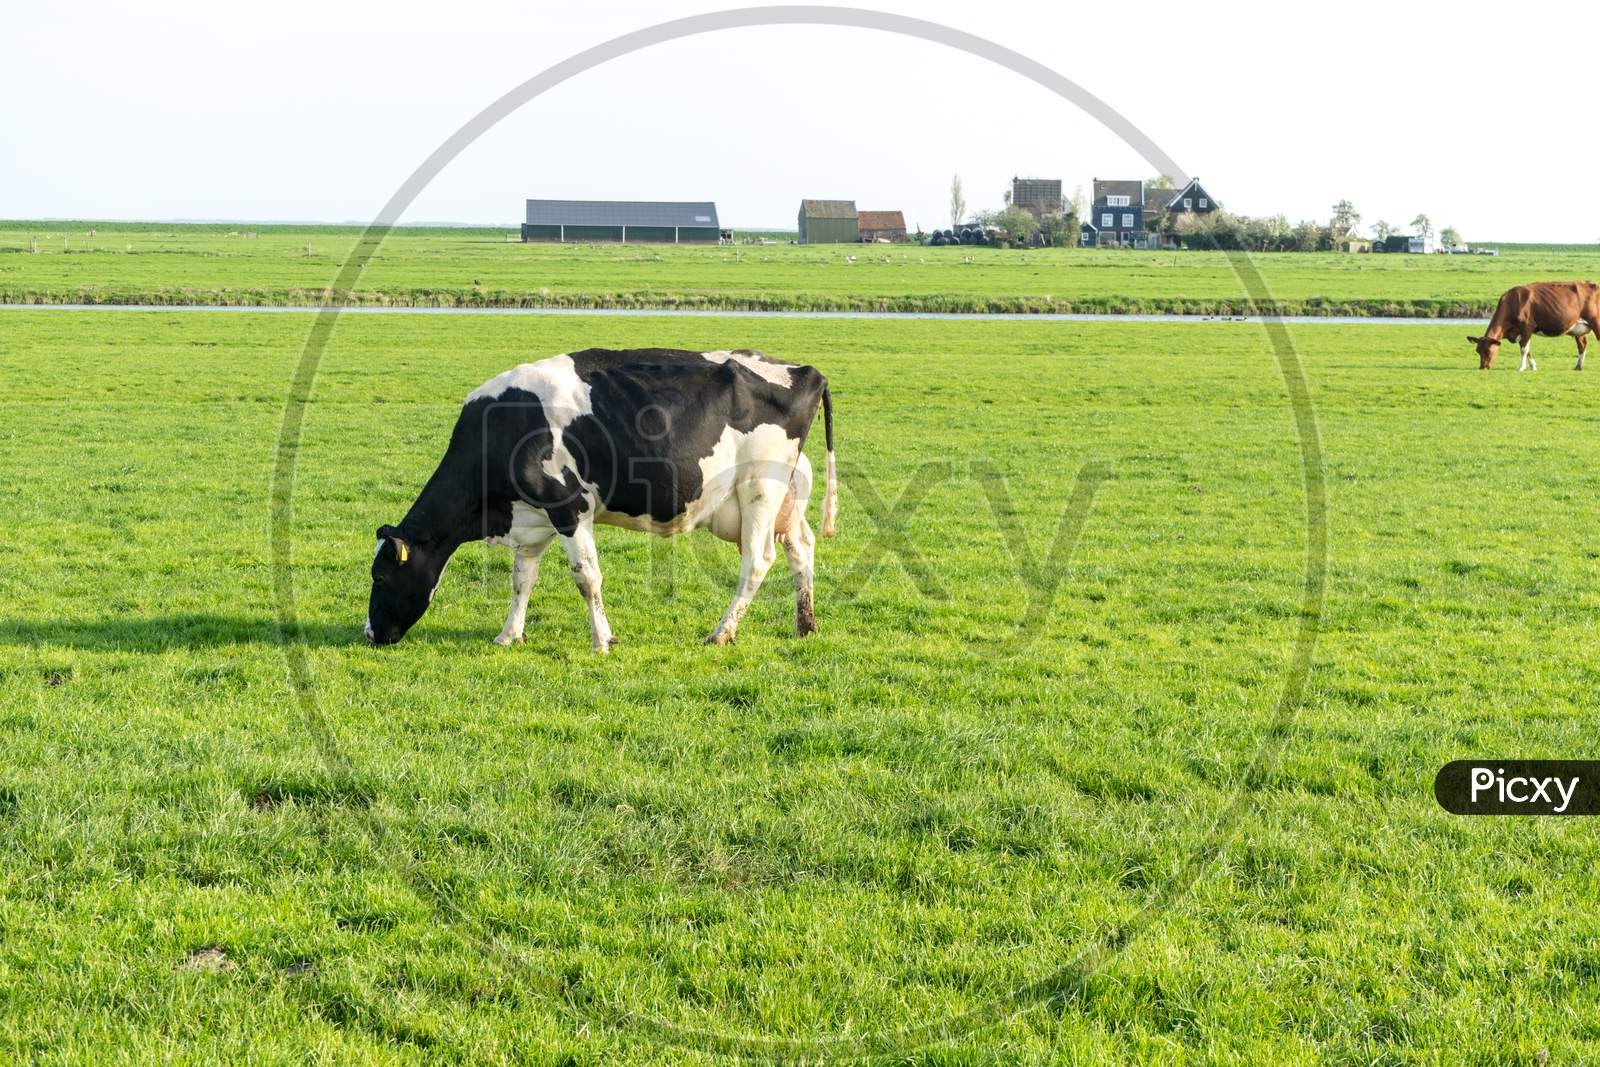 Netherlands,Wetlands,Maarken, A Cow Grazing On A Lush Green Field